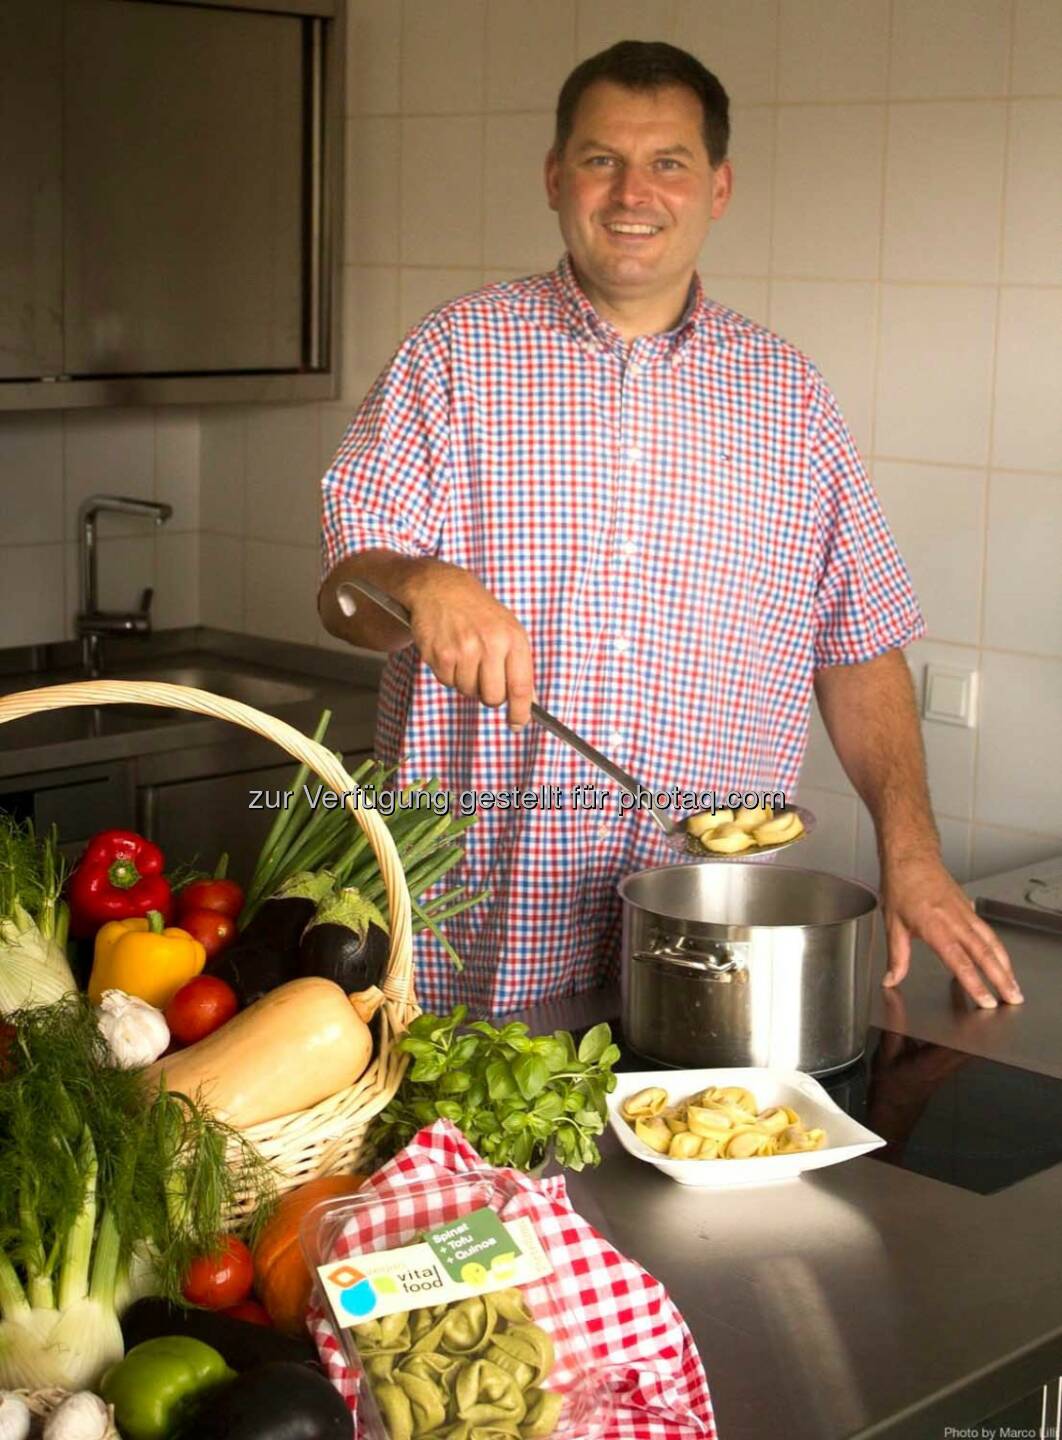 Wolfgang Gössweiner (vegan vital food) gewinnt neue Großabnehmer: Biogast, Giacomo International Food und dennree.